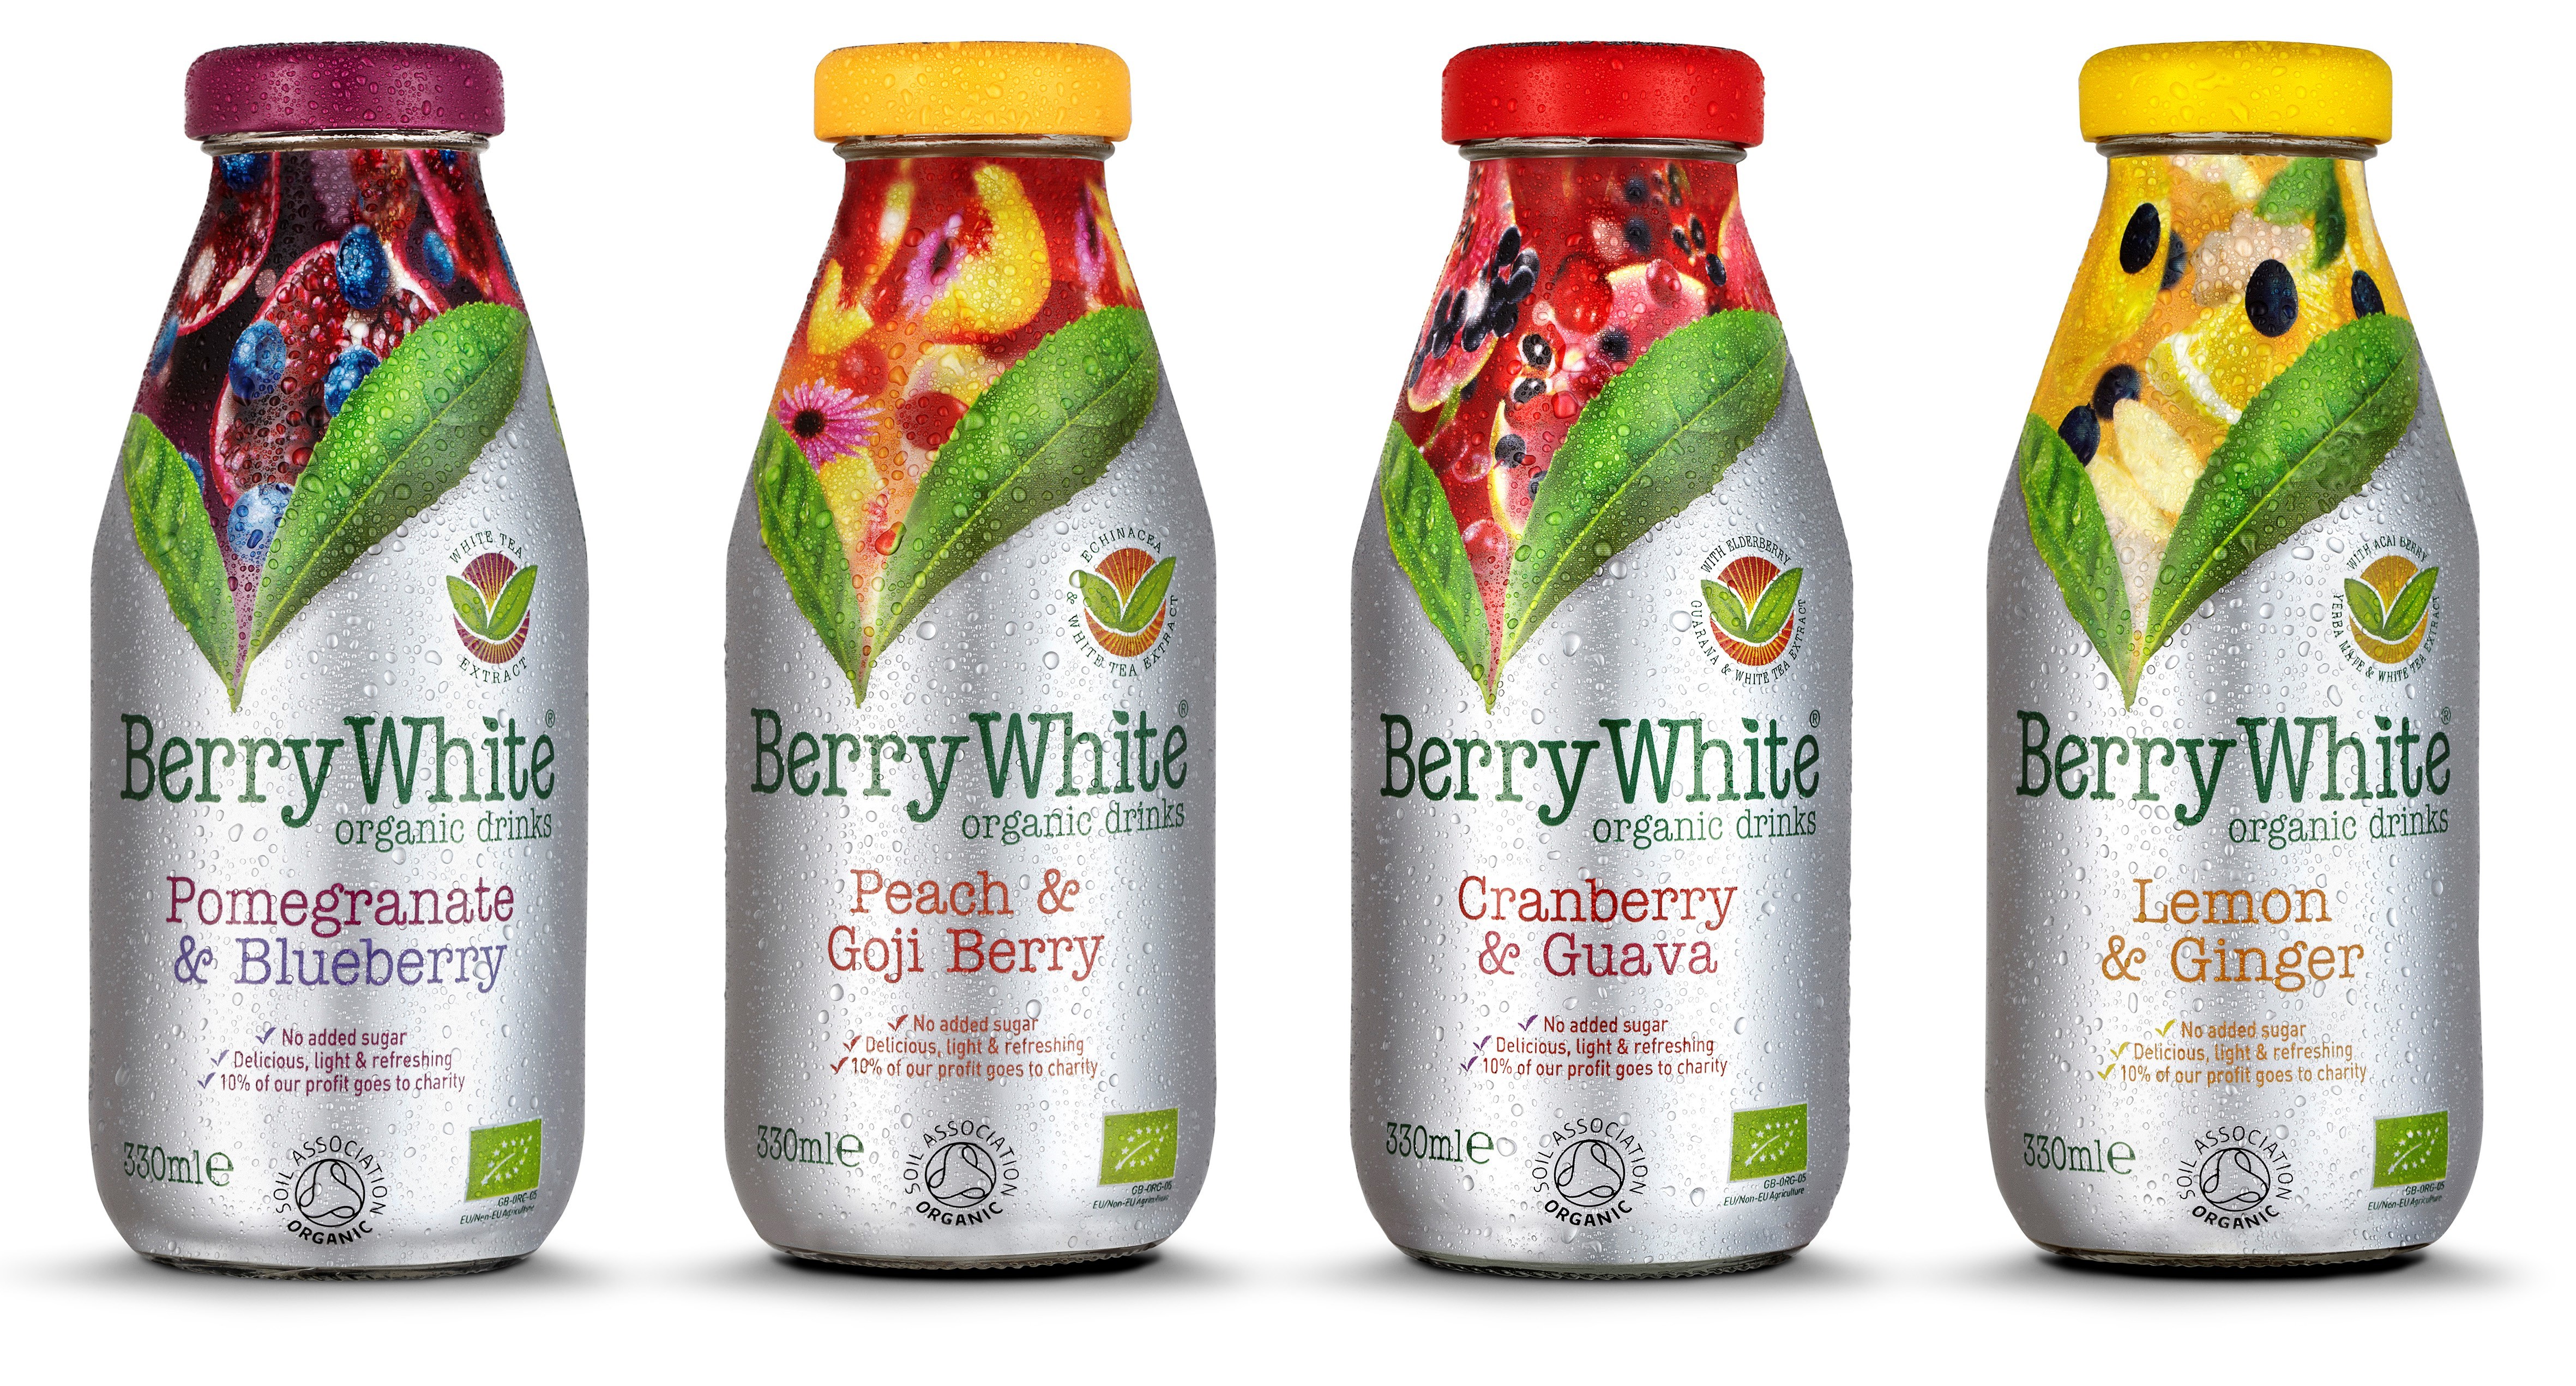 BerryWhite range of drinks